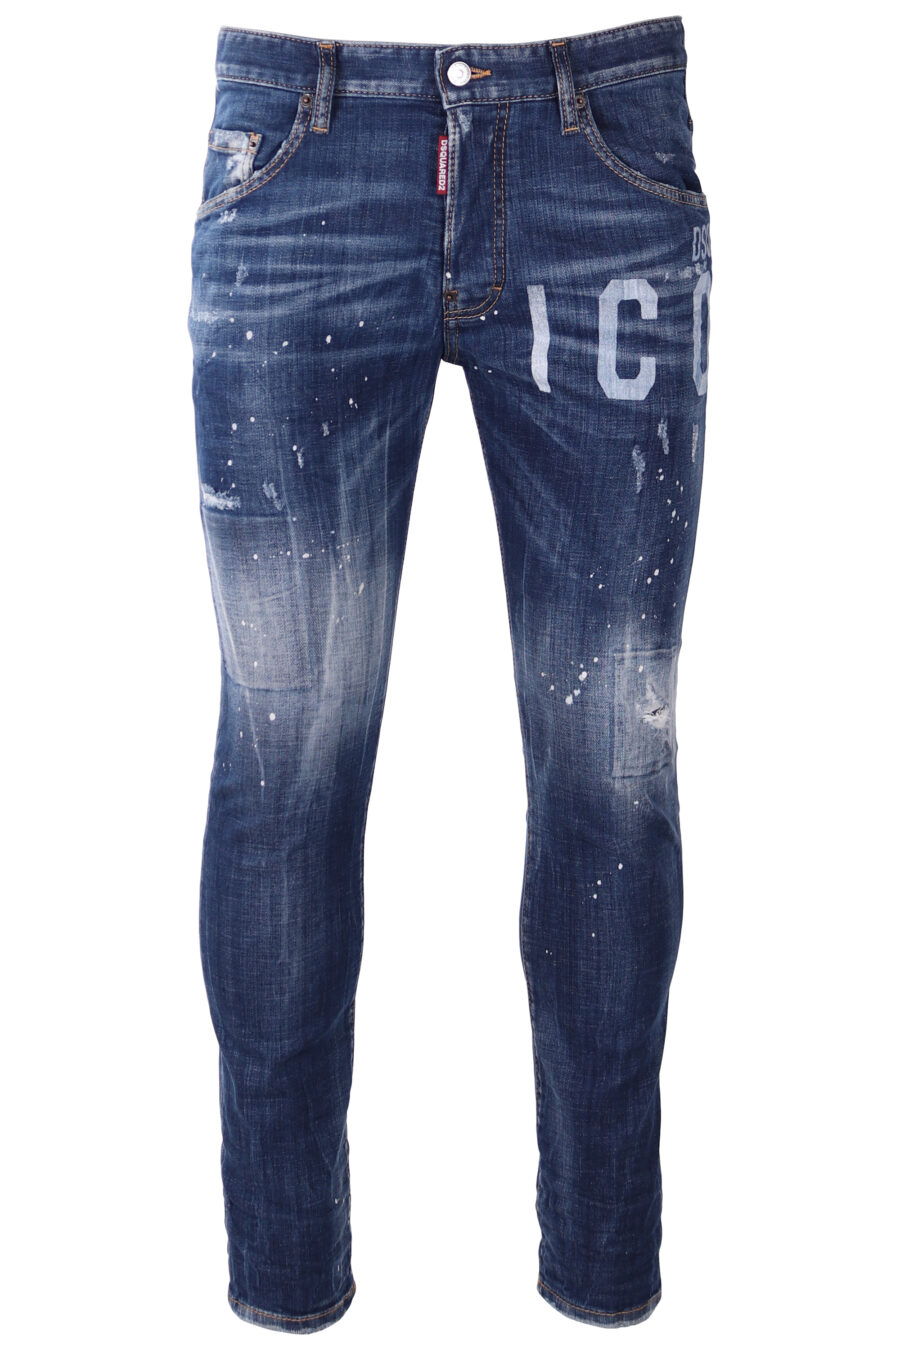 Pantalón vaquero "Skater" azul desgastado con logo "icon" blanco - IMG 1746